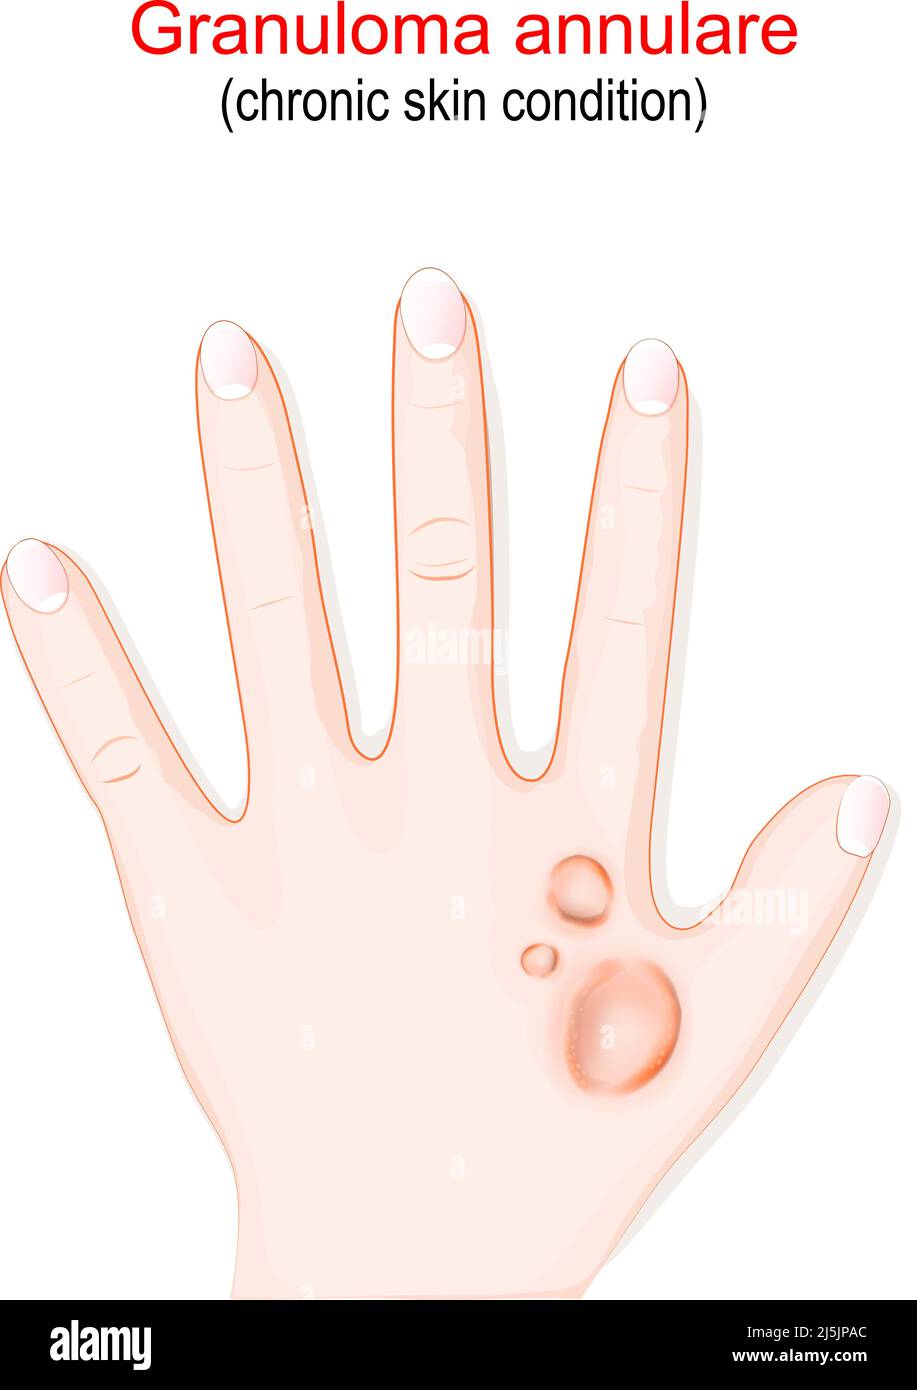 Granulom annulare. Chronische Hauterkrankung. Hand mit rötlichen Beulen auf der Haut in einem Kreis oder Ring angeordnet. vektor-Illustration Stock Vektor